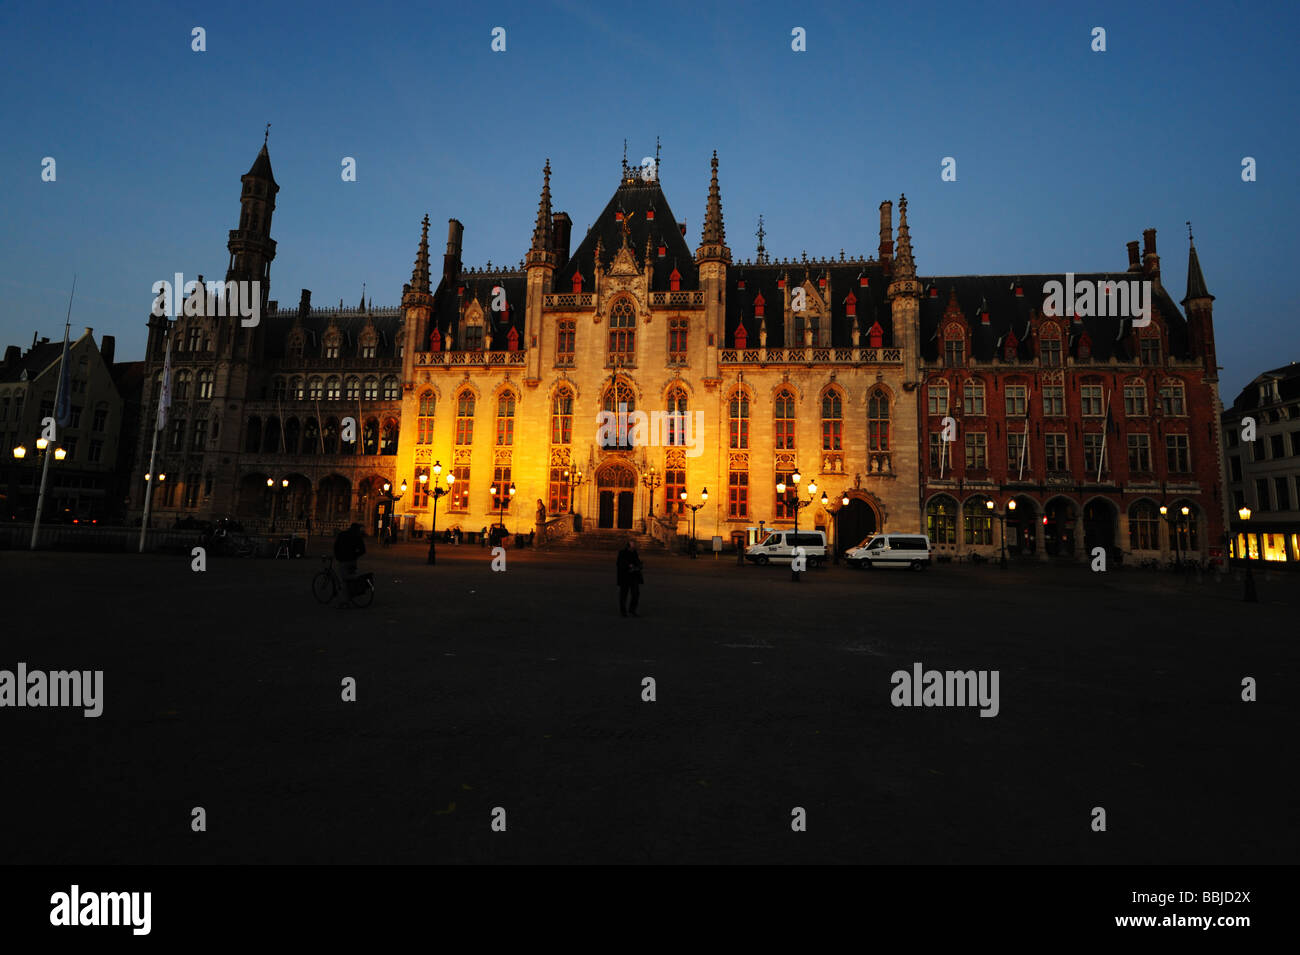 Hôtel de ville la nuit dans la grande place du marché Bruges Belgique Banque D'Images